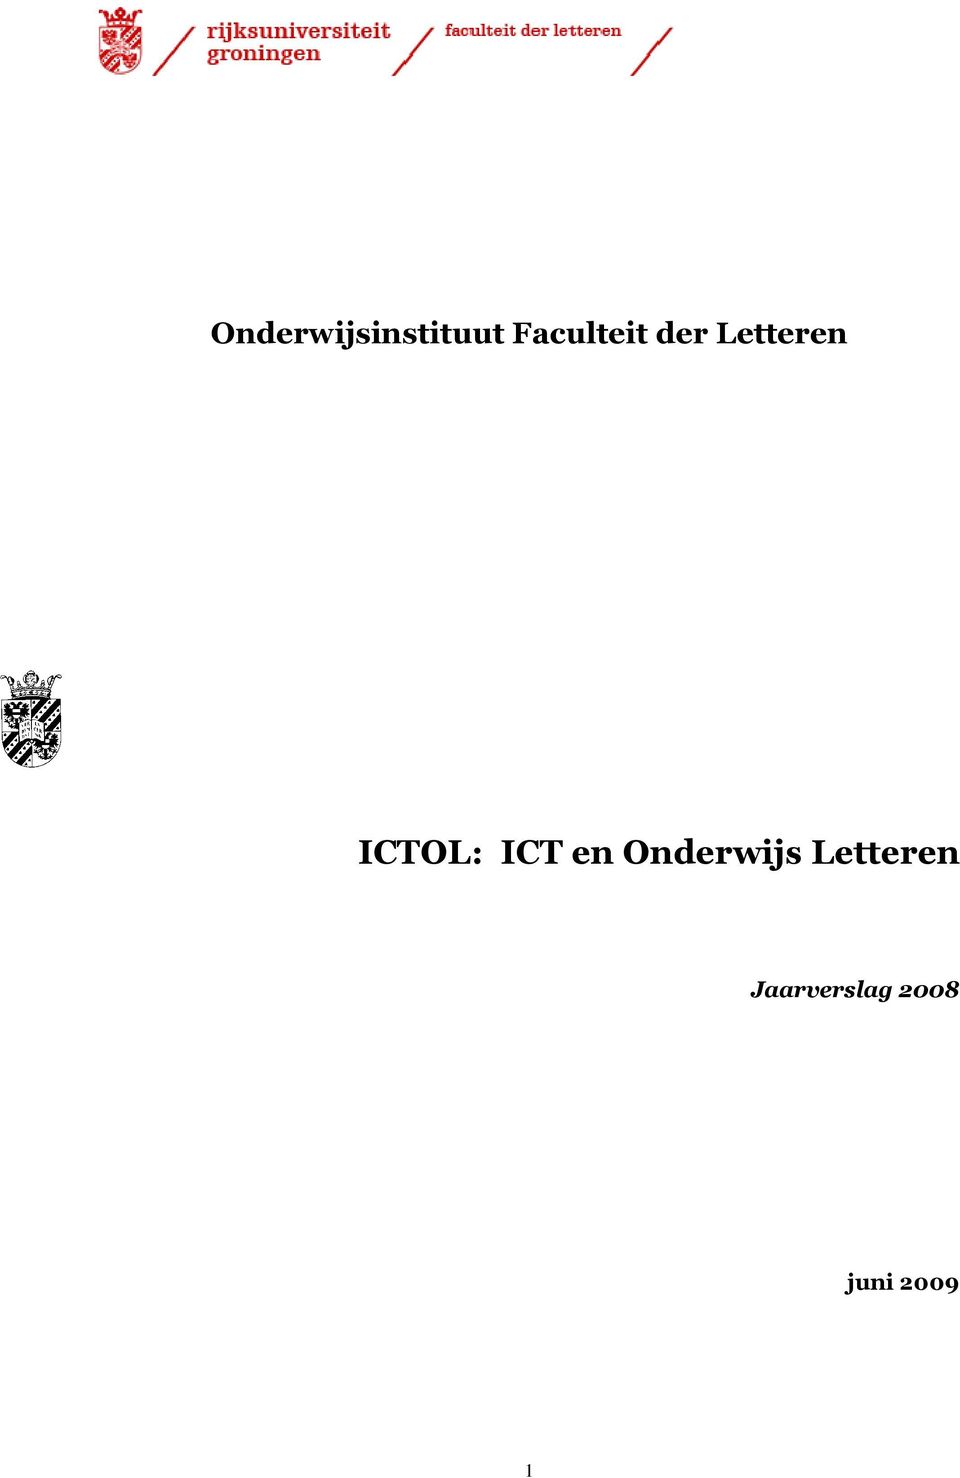 ICTOL: ICT en Onderwijs